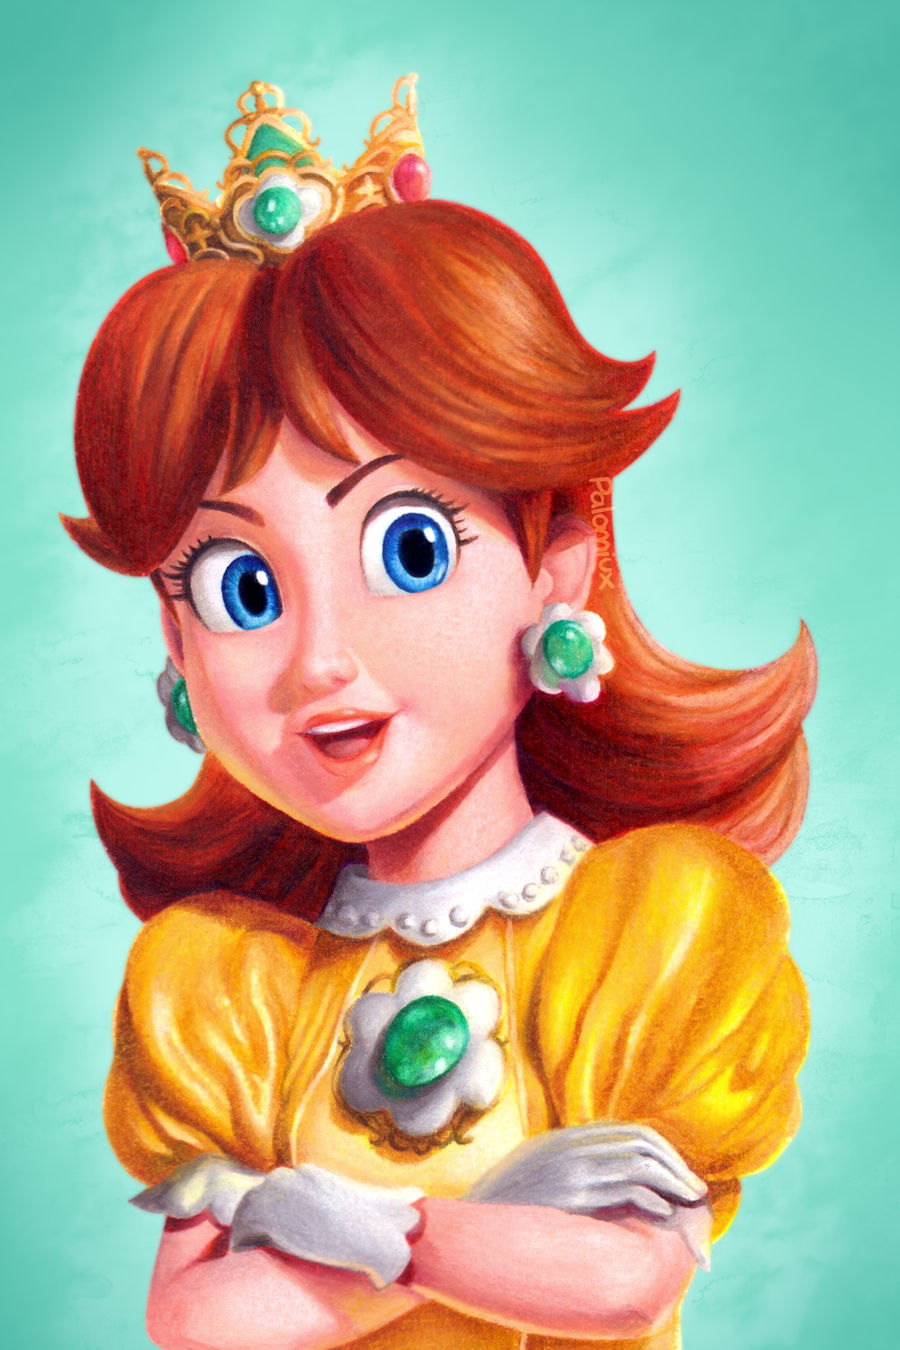 Princess Daisy (Mario Movie Style) by Palomiuxez on DeviantArt